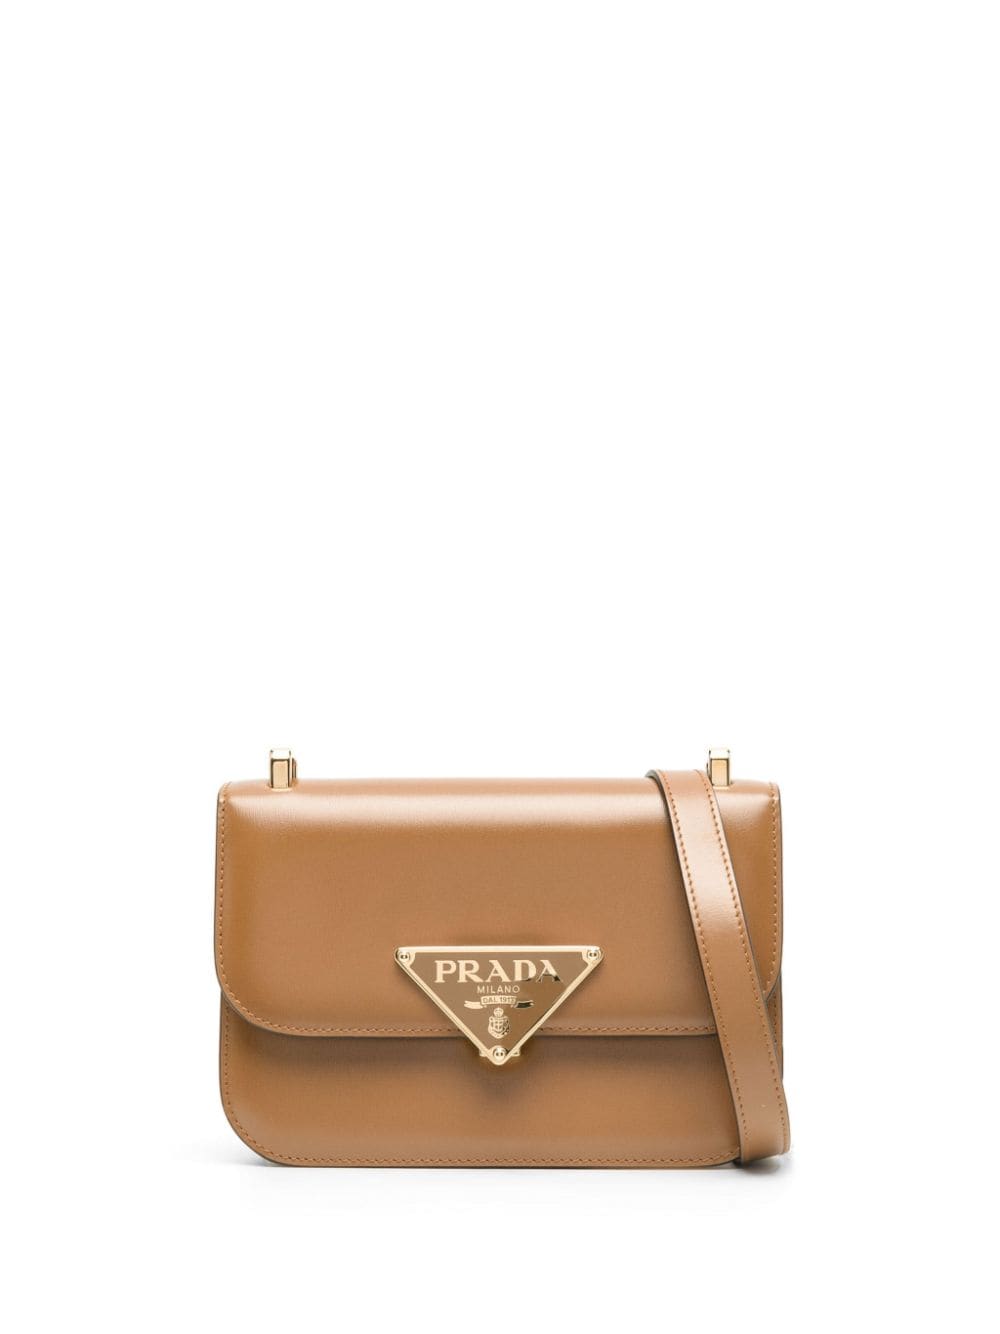 Emblème shoulder bag, Prada